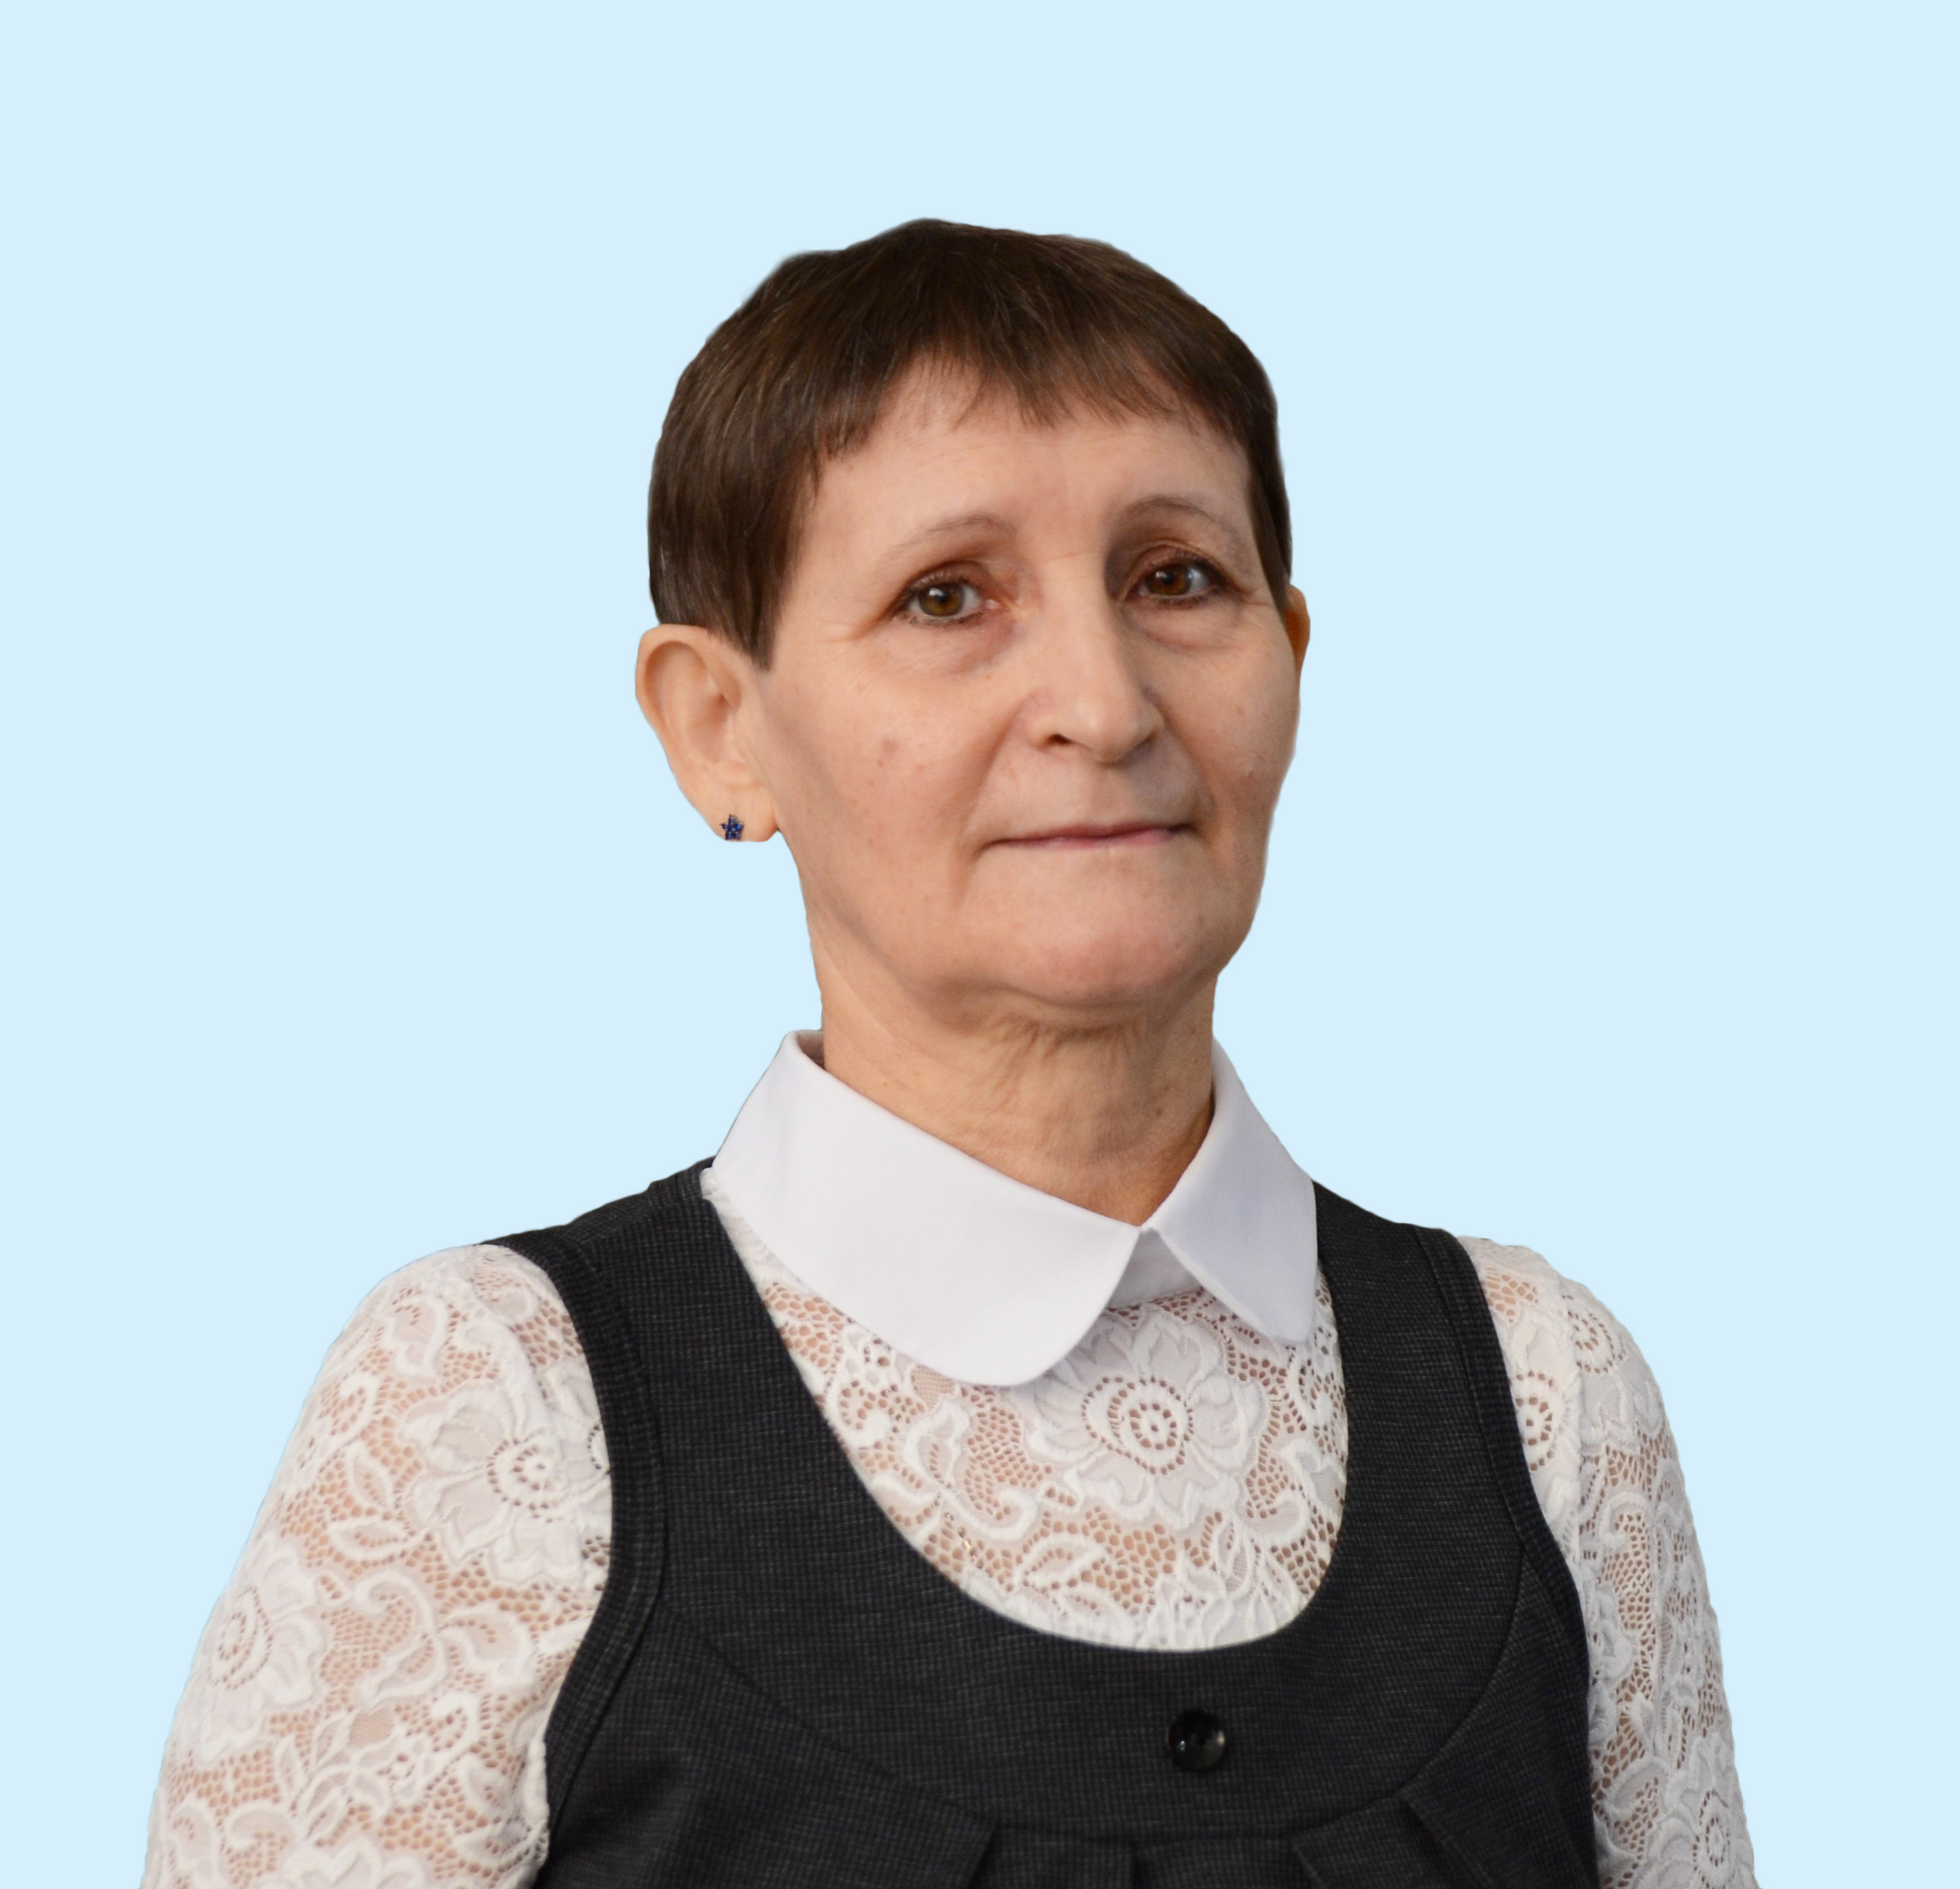 Пономарева Ирина Петровна